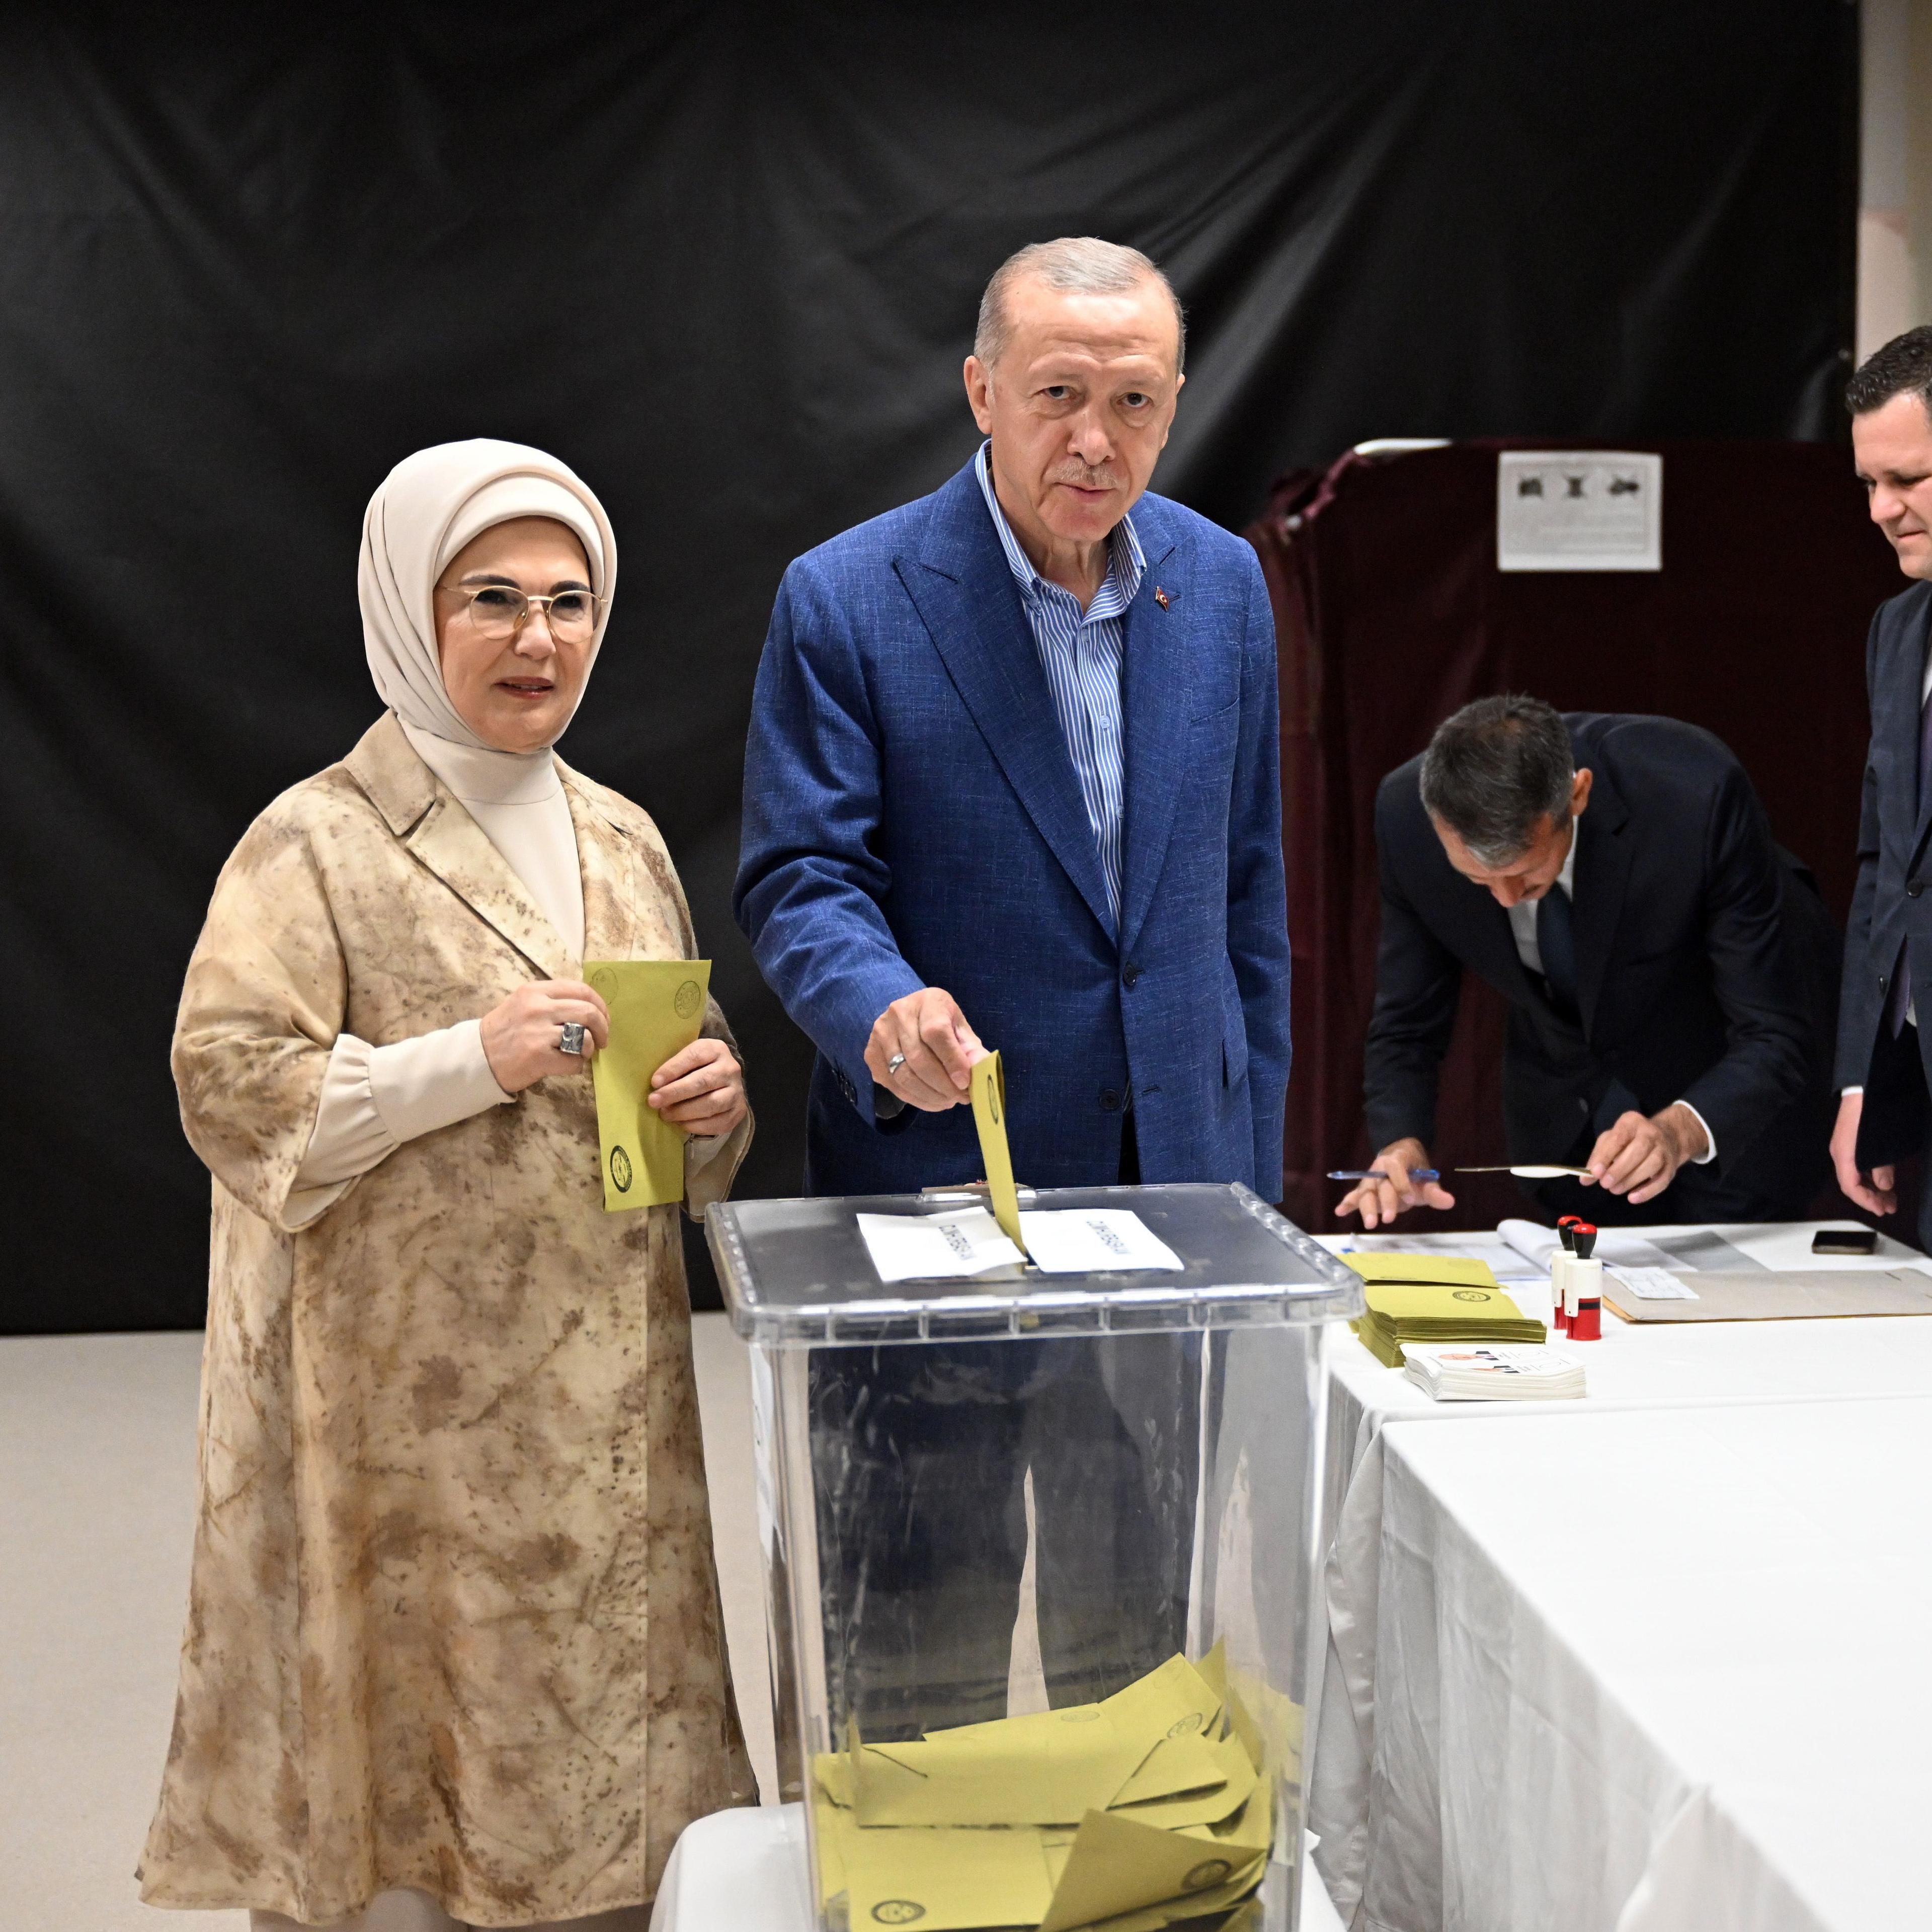 Izbori u Turskoj: Erdoan u pratnji supruge Emine glasao u Istanbulu